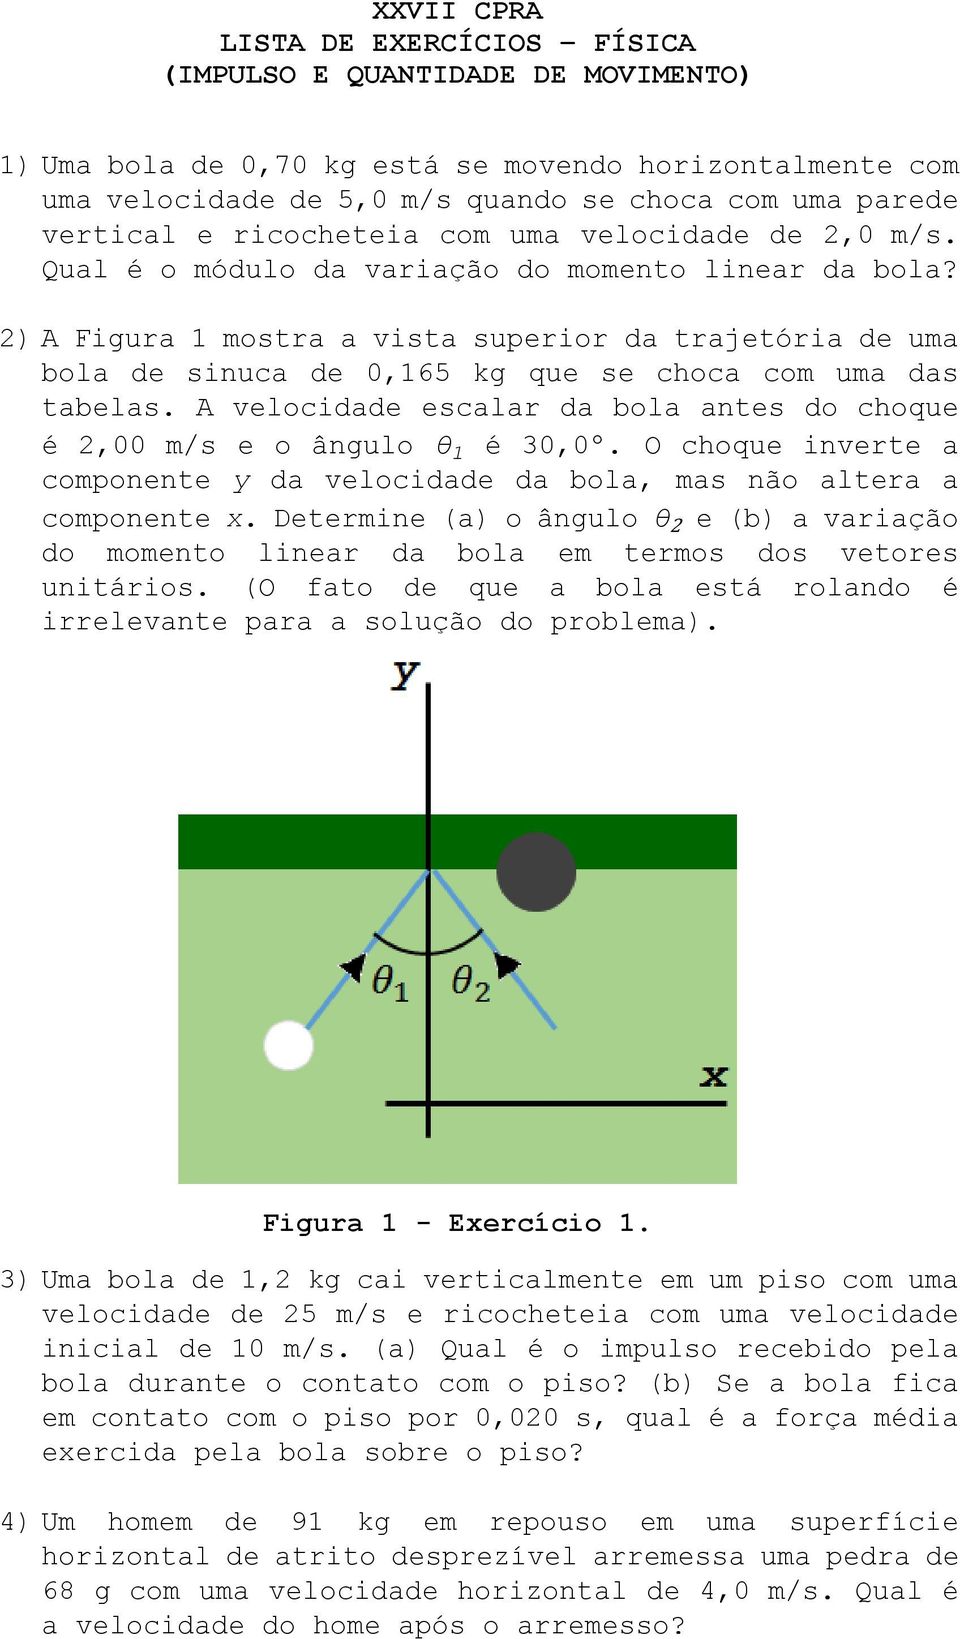 2) A Figura 1 mostra a vista superior da trajetória de uma bola de sinuca de 0,165 kg que se choca com uma das tabelas. A velocidade escalar da bola antes do choque é 2,00 m/s e o ângulo θ 1 é 30,0º.